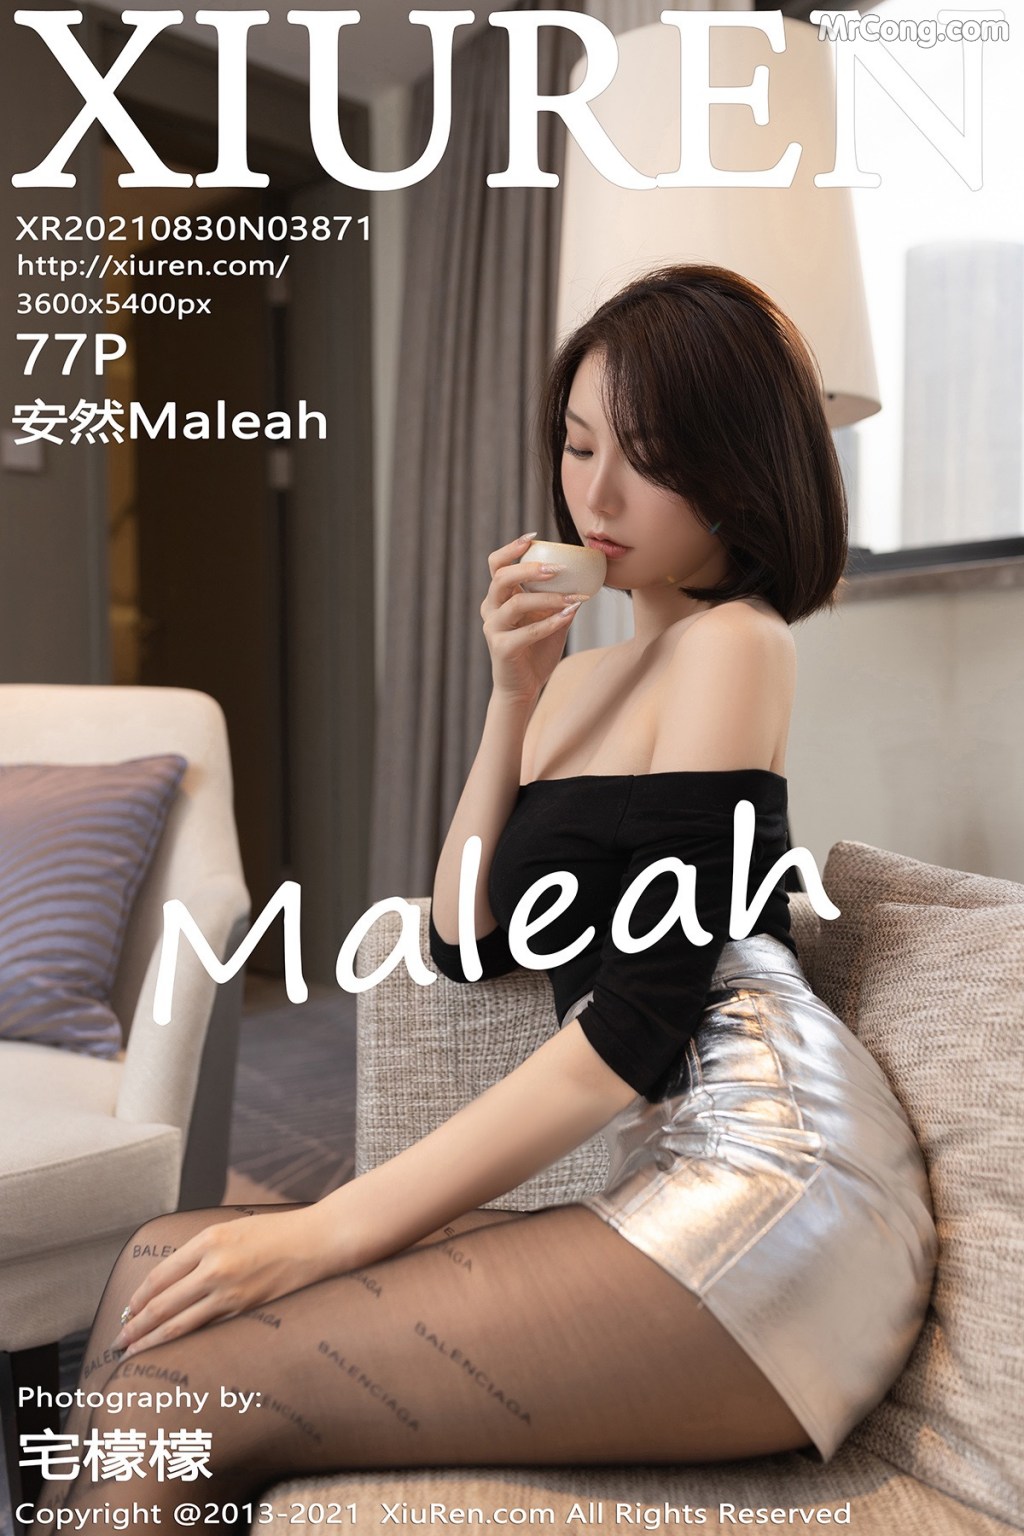 XIUREN No.3871: 安然Maleah (78 photos)